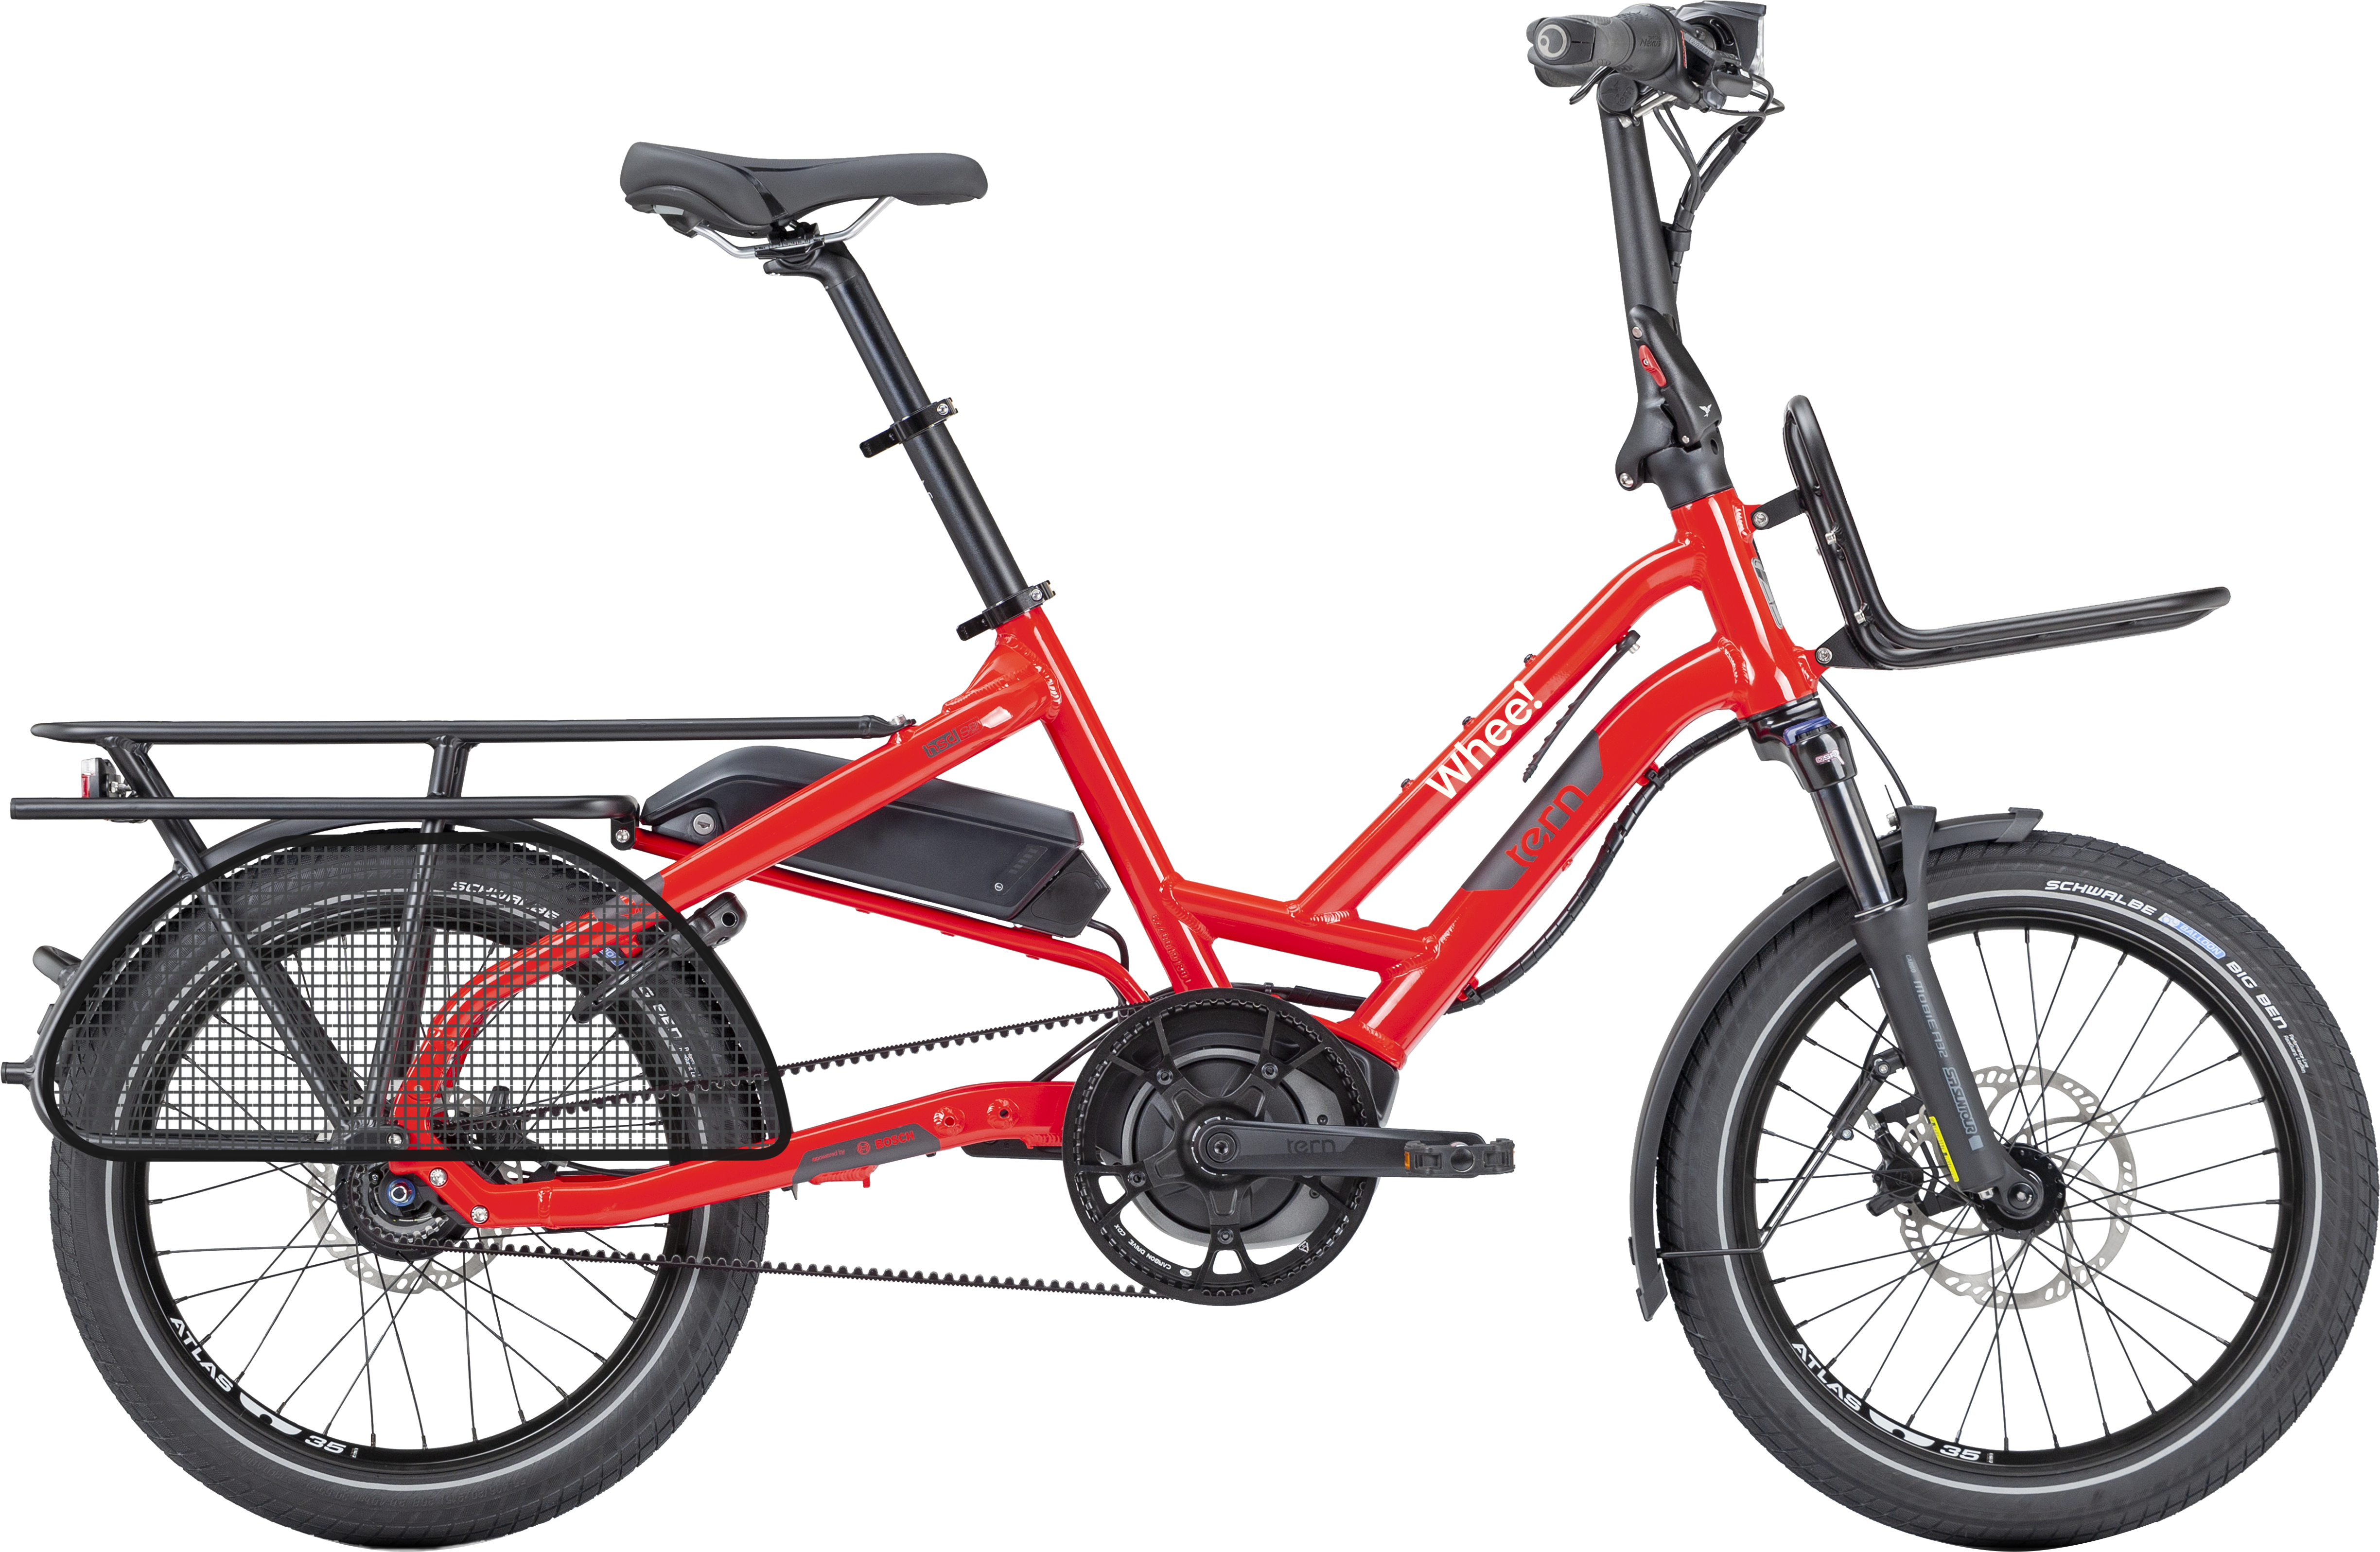 Bildet er av en rød Elsykkel som heter Tern HSD. Det er en liten sykkel med 20' hjul og plass til en stor passasjer